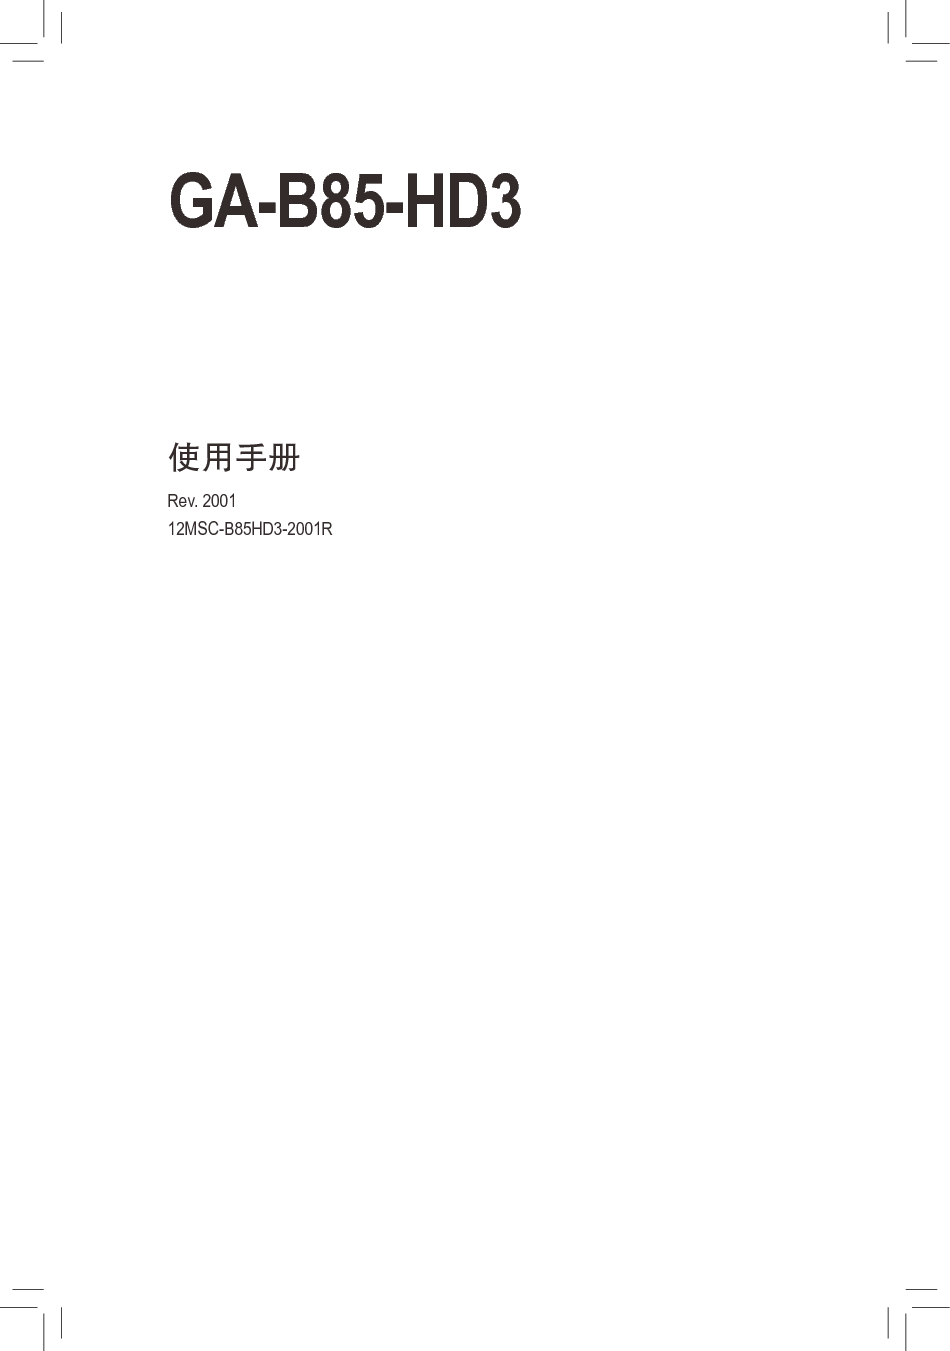 技嘉 Gigabyte GA-B85-HD3 2001版 使用手册 封面